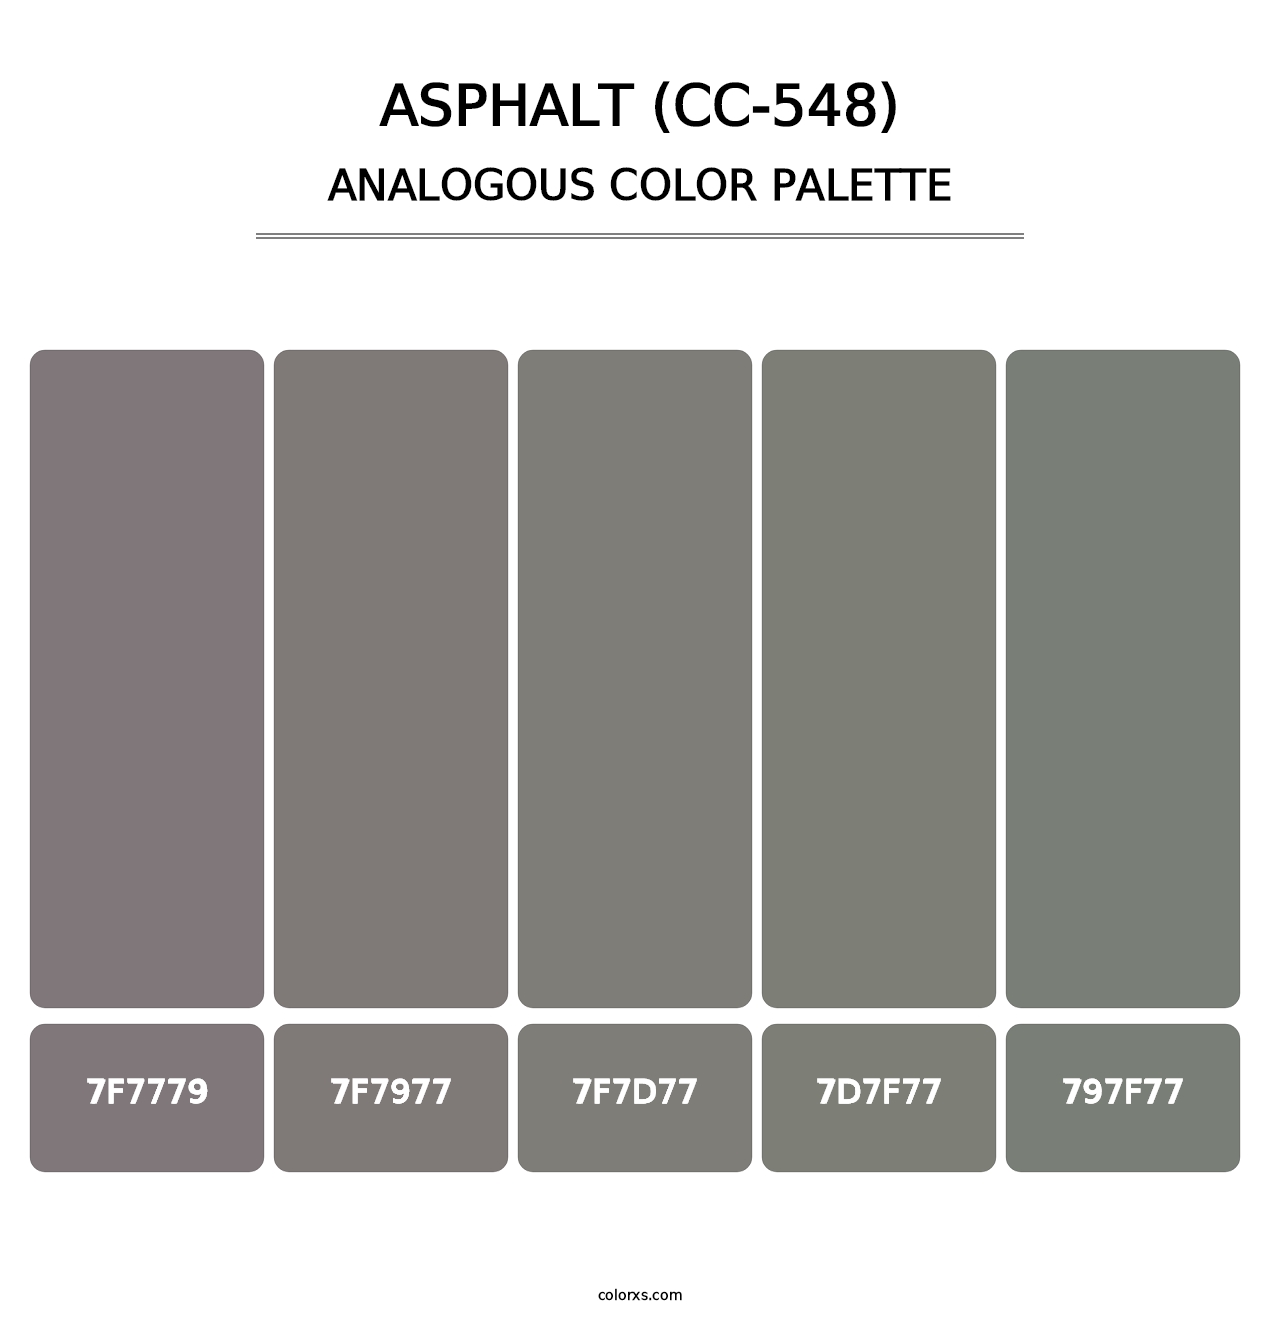 Asphalt (CC-548) - Analogous Color Palette